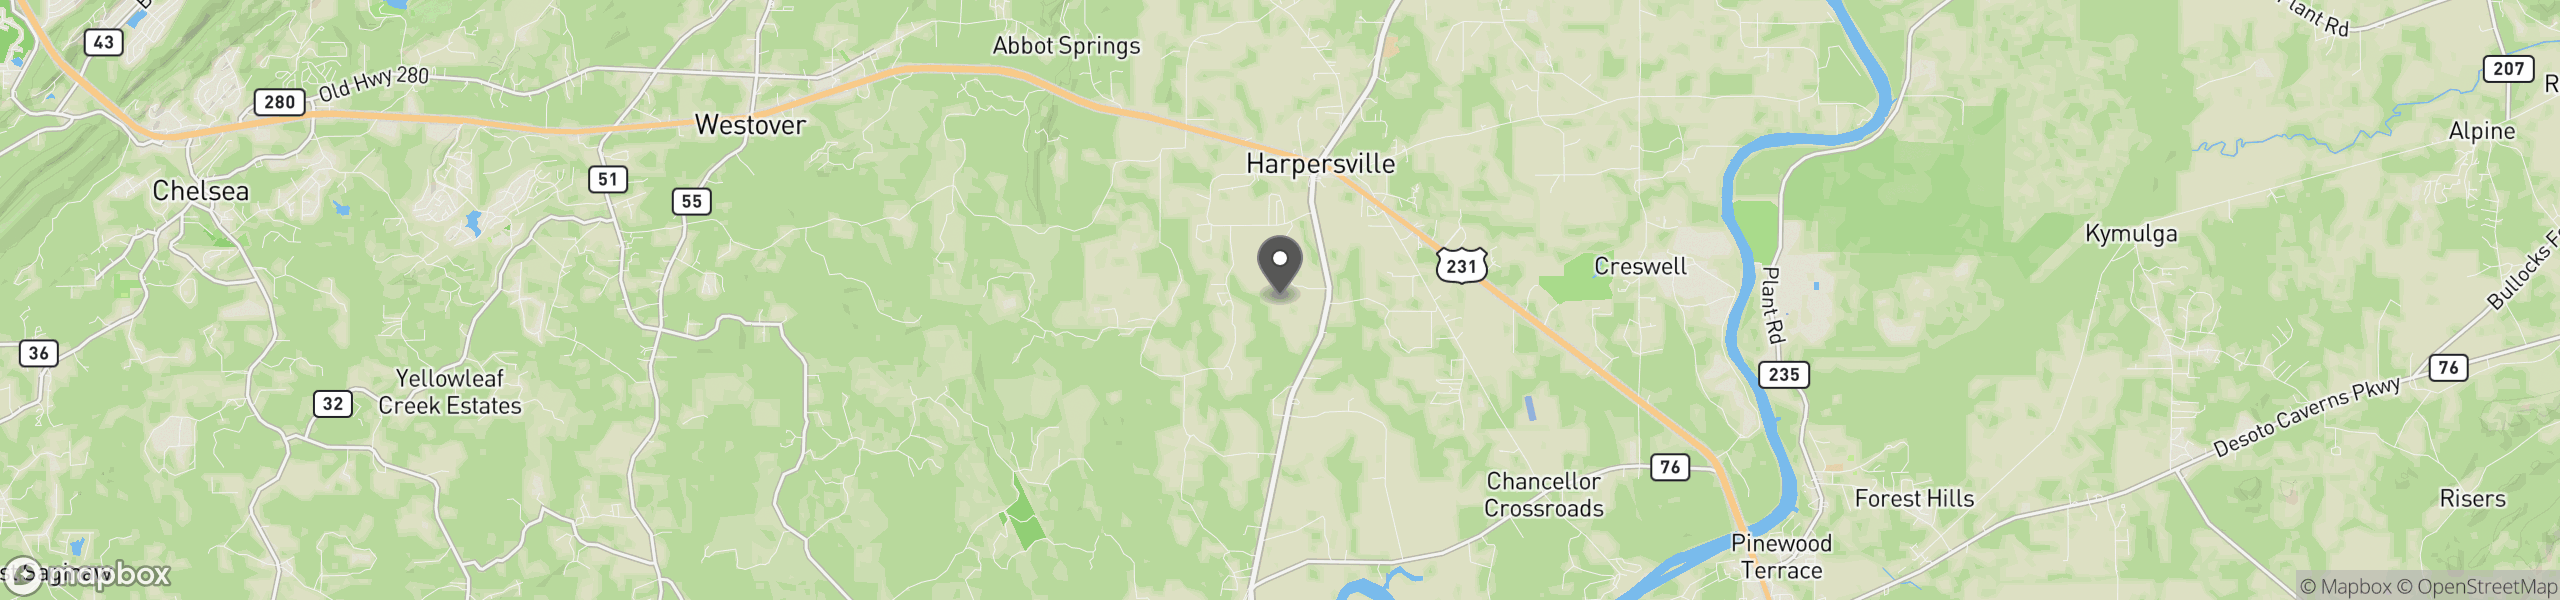 Harpersville, AL 35078